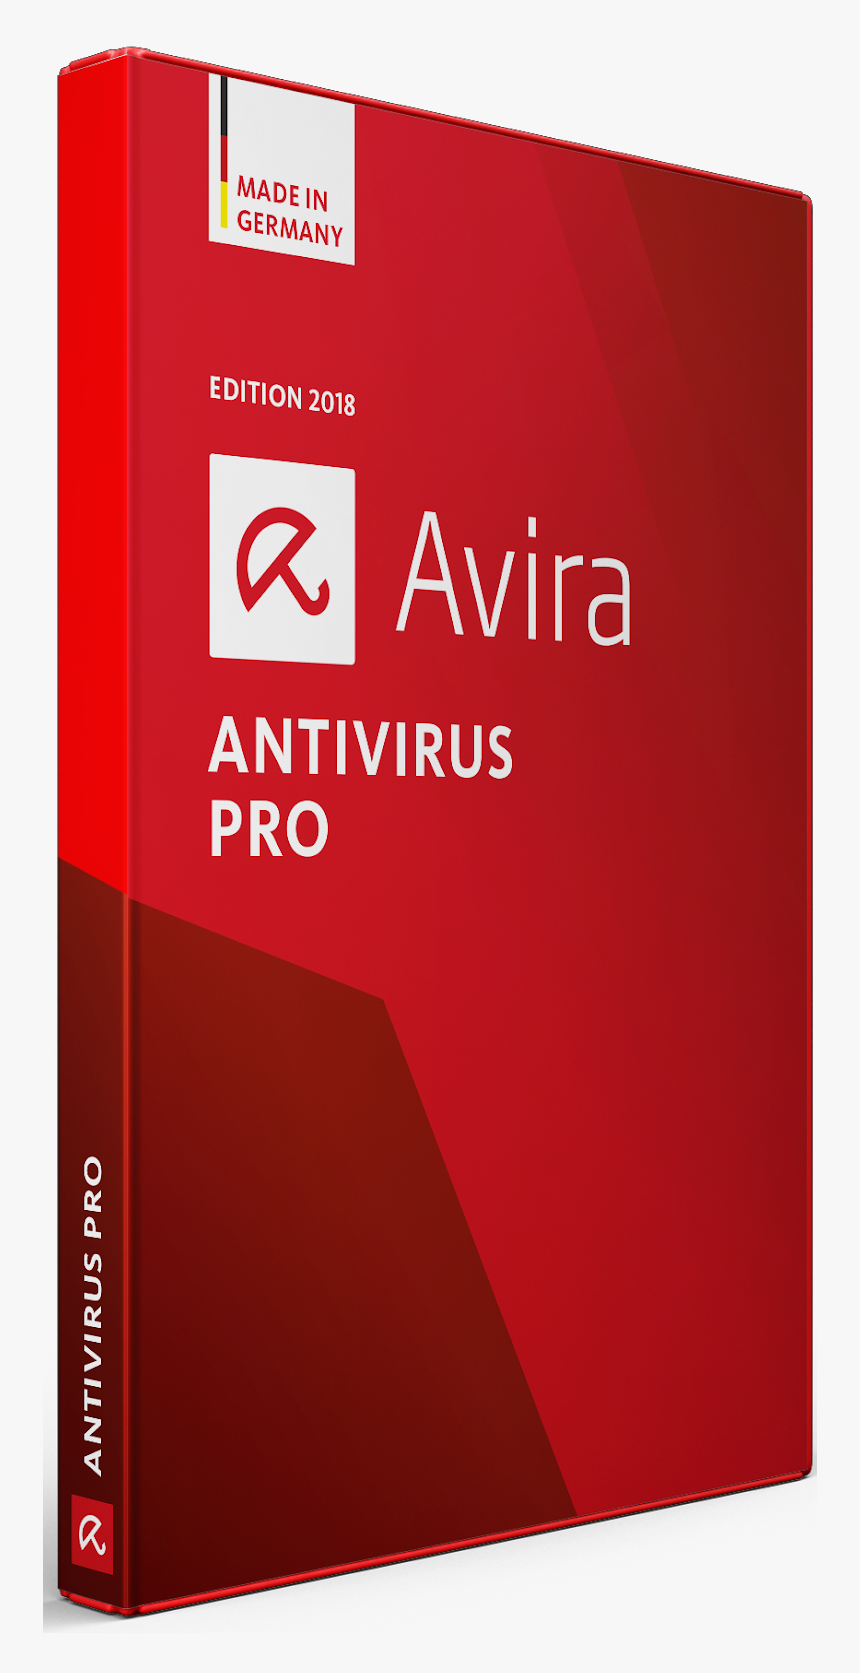 Virus pro. Авира. Avira Antivirus. Avira Pro. ANTIVIR антивирус.